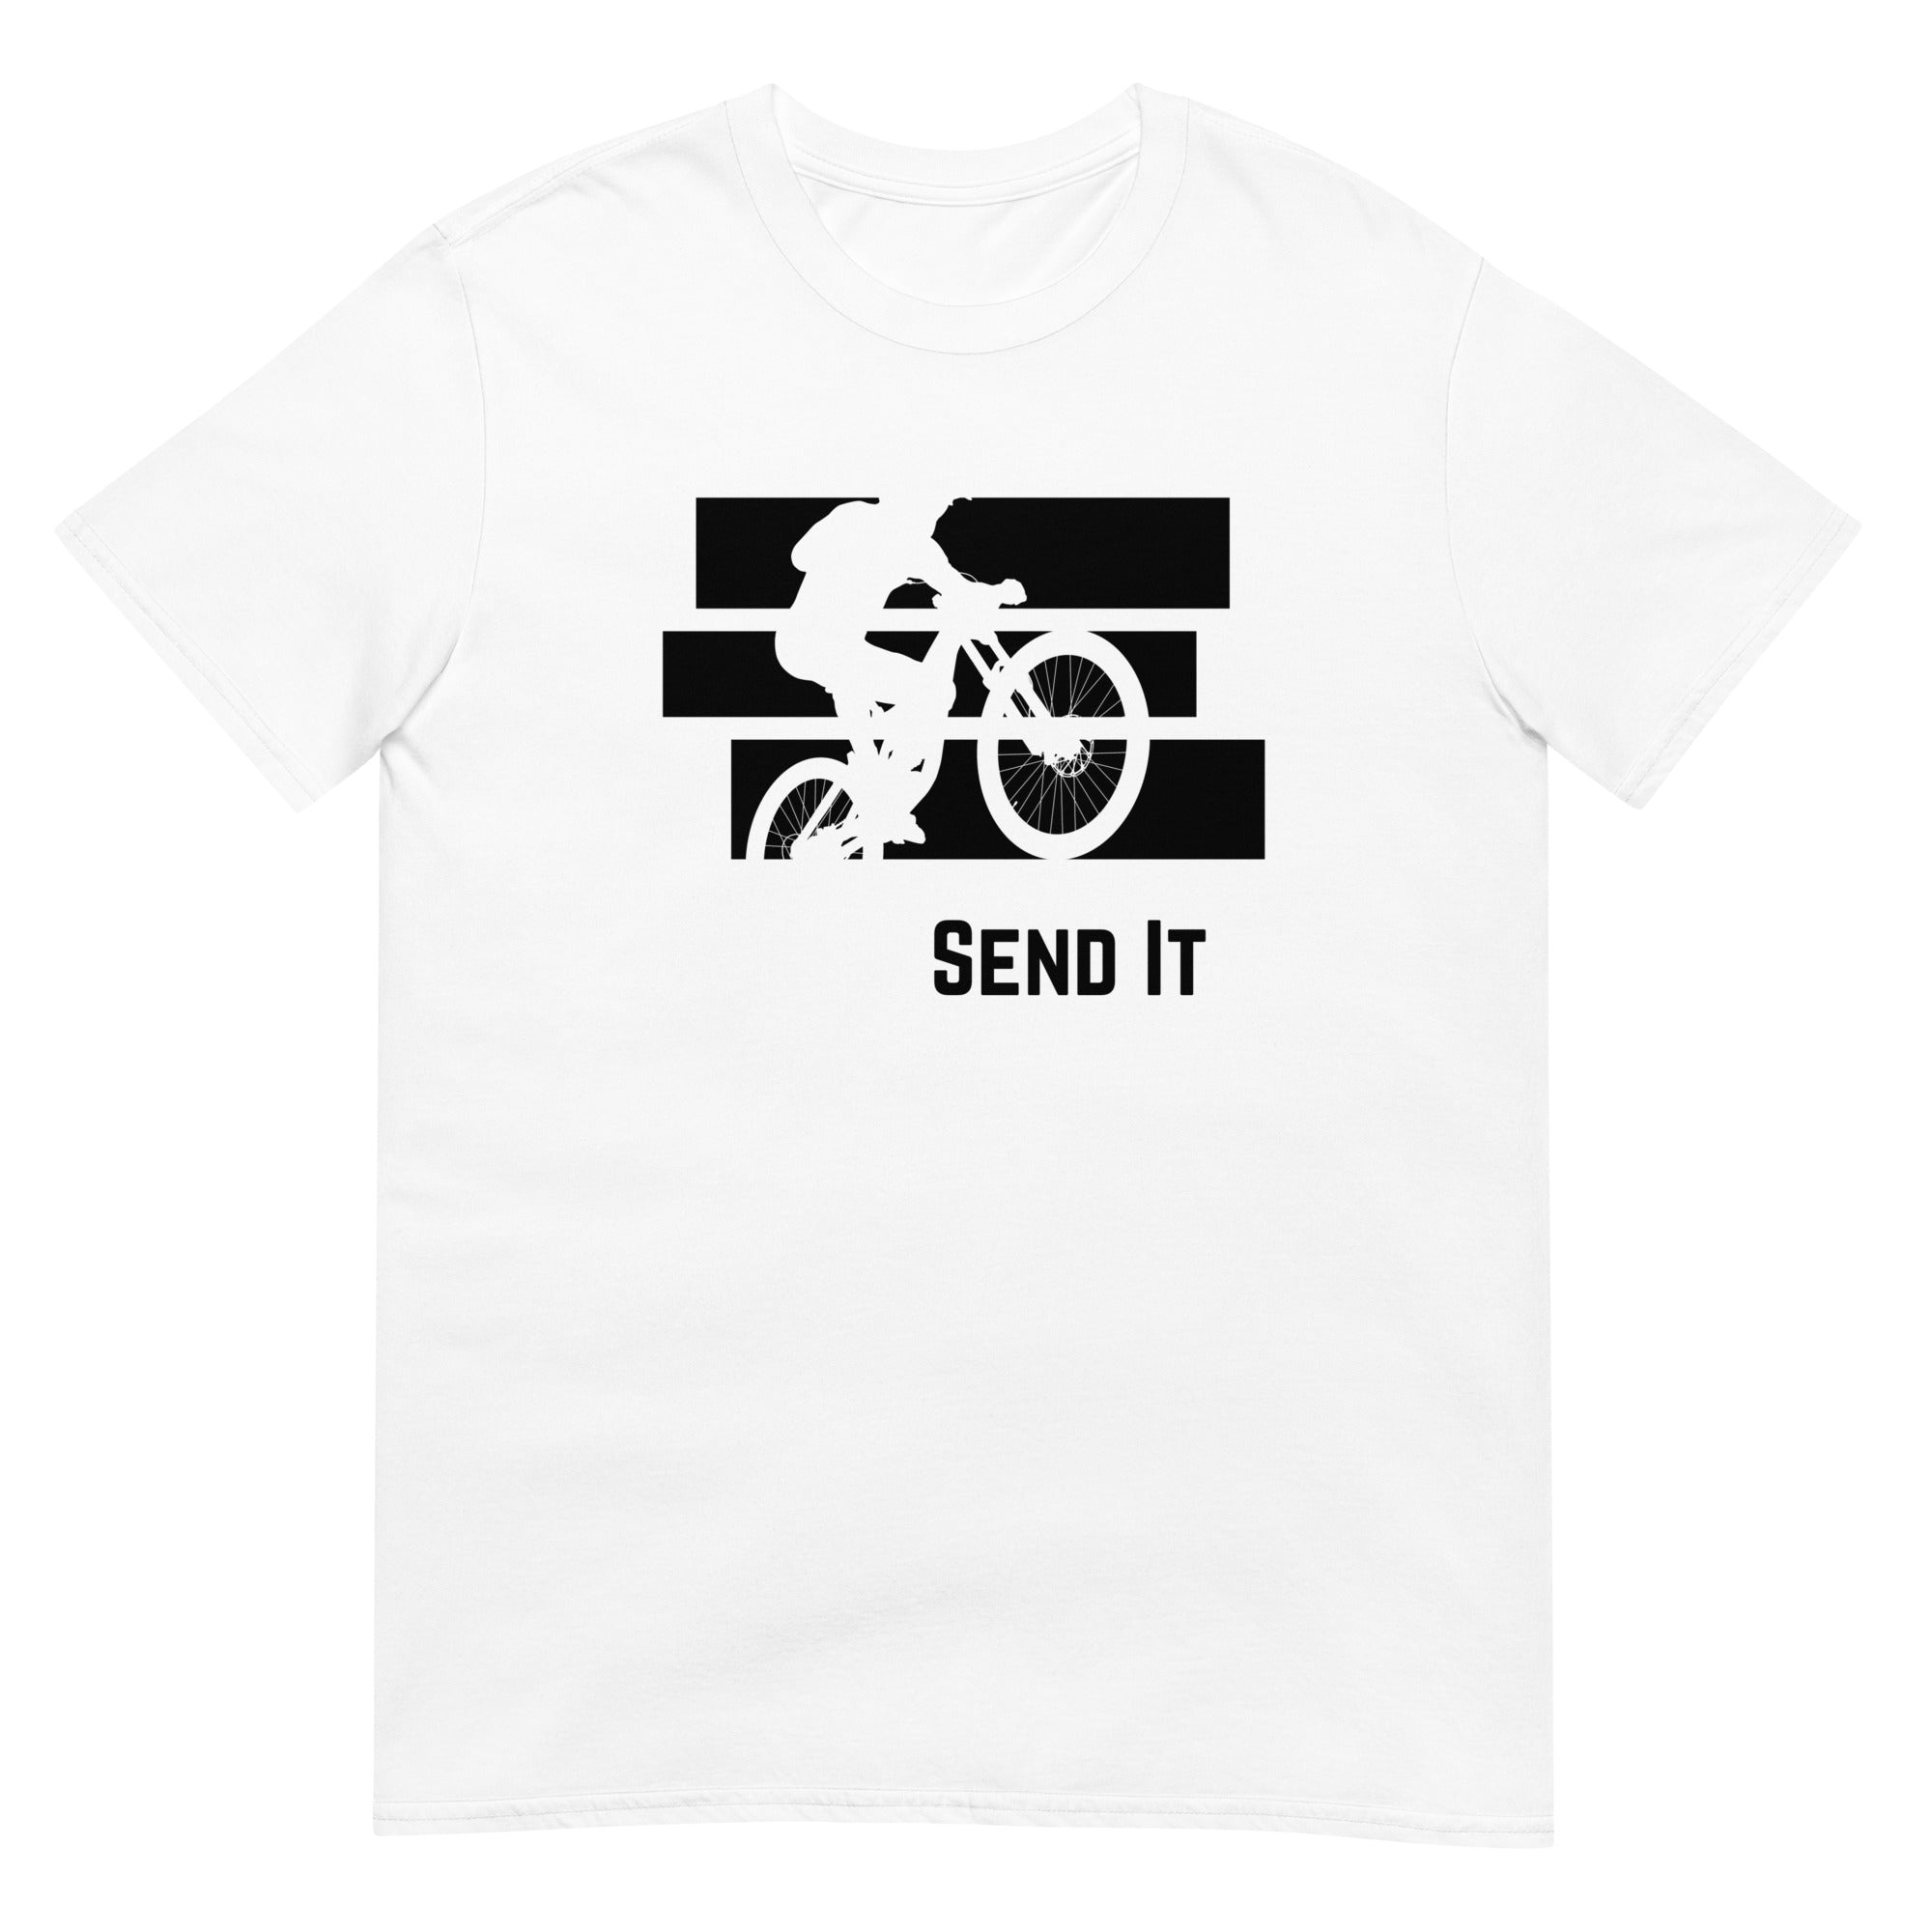 Send It Men's T-Shirt